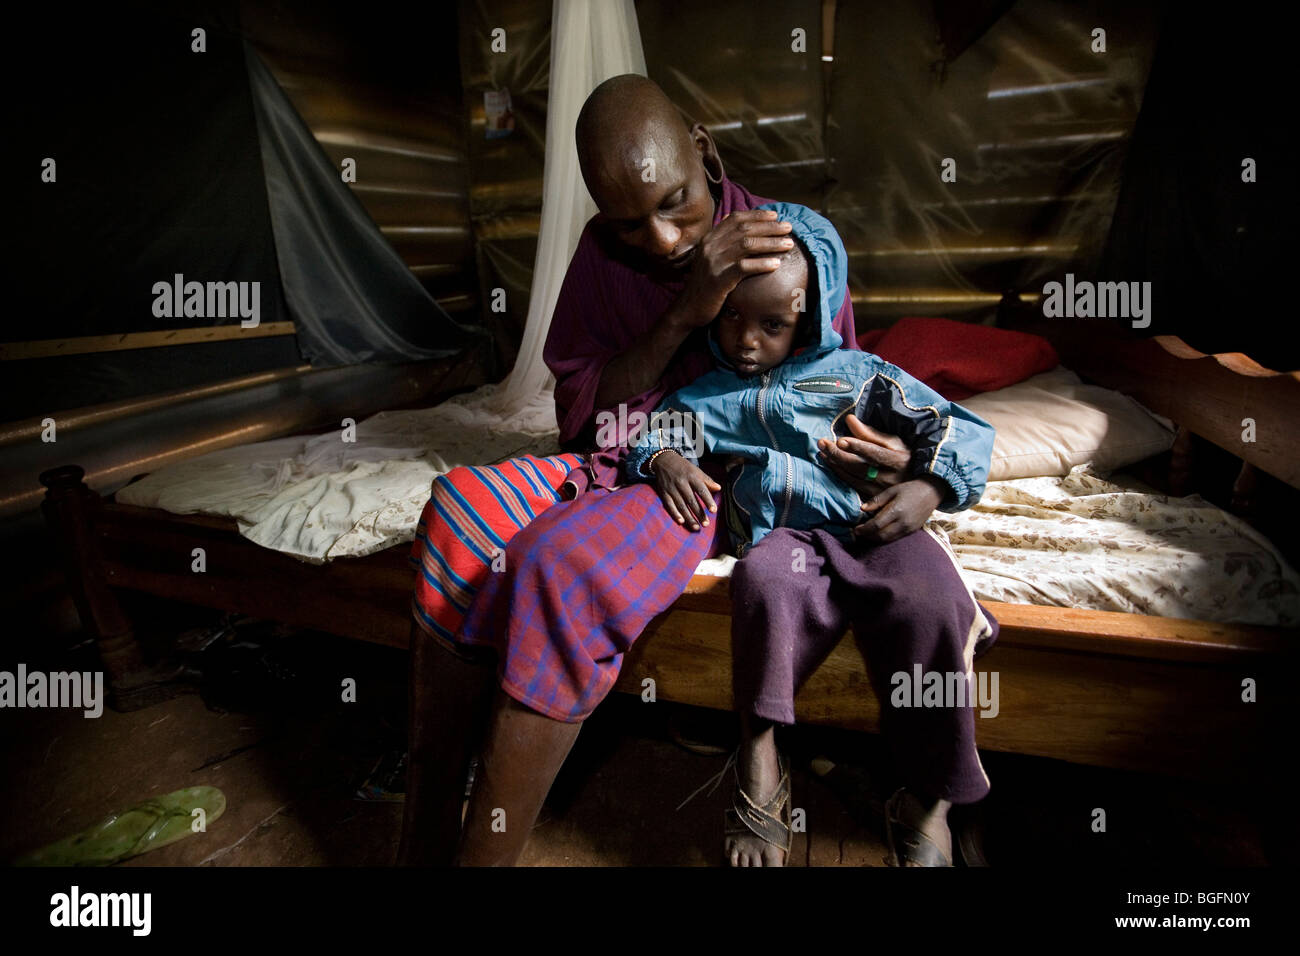 Un homme de maasai du Kenya, Rombo console son enfant malade à la lumière des ONG en Afrique. La région de Kilimandjaro, Tanzanie. Banque D'Images